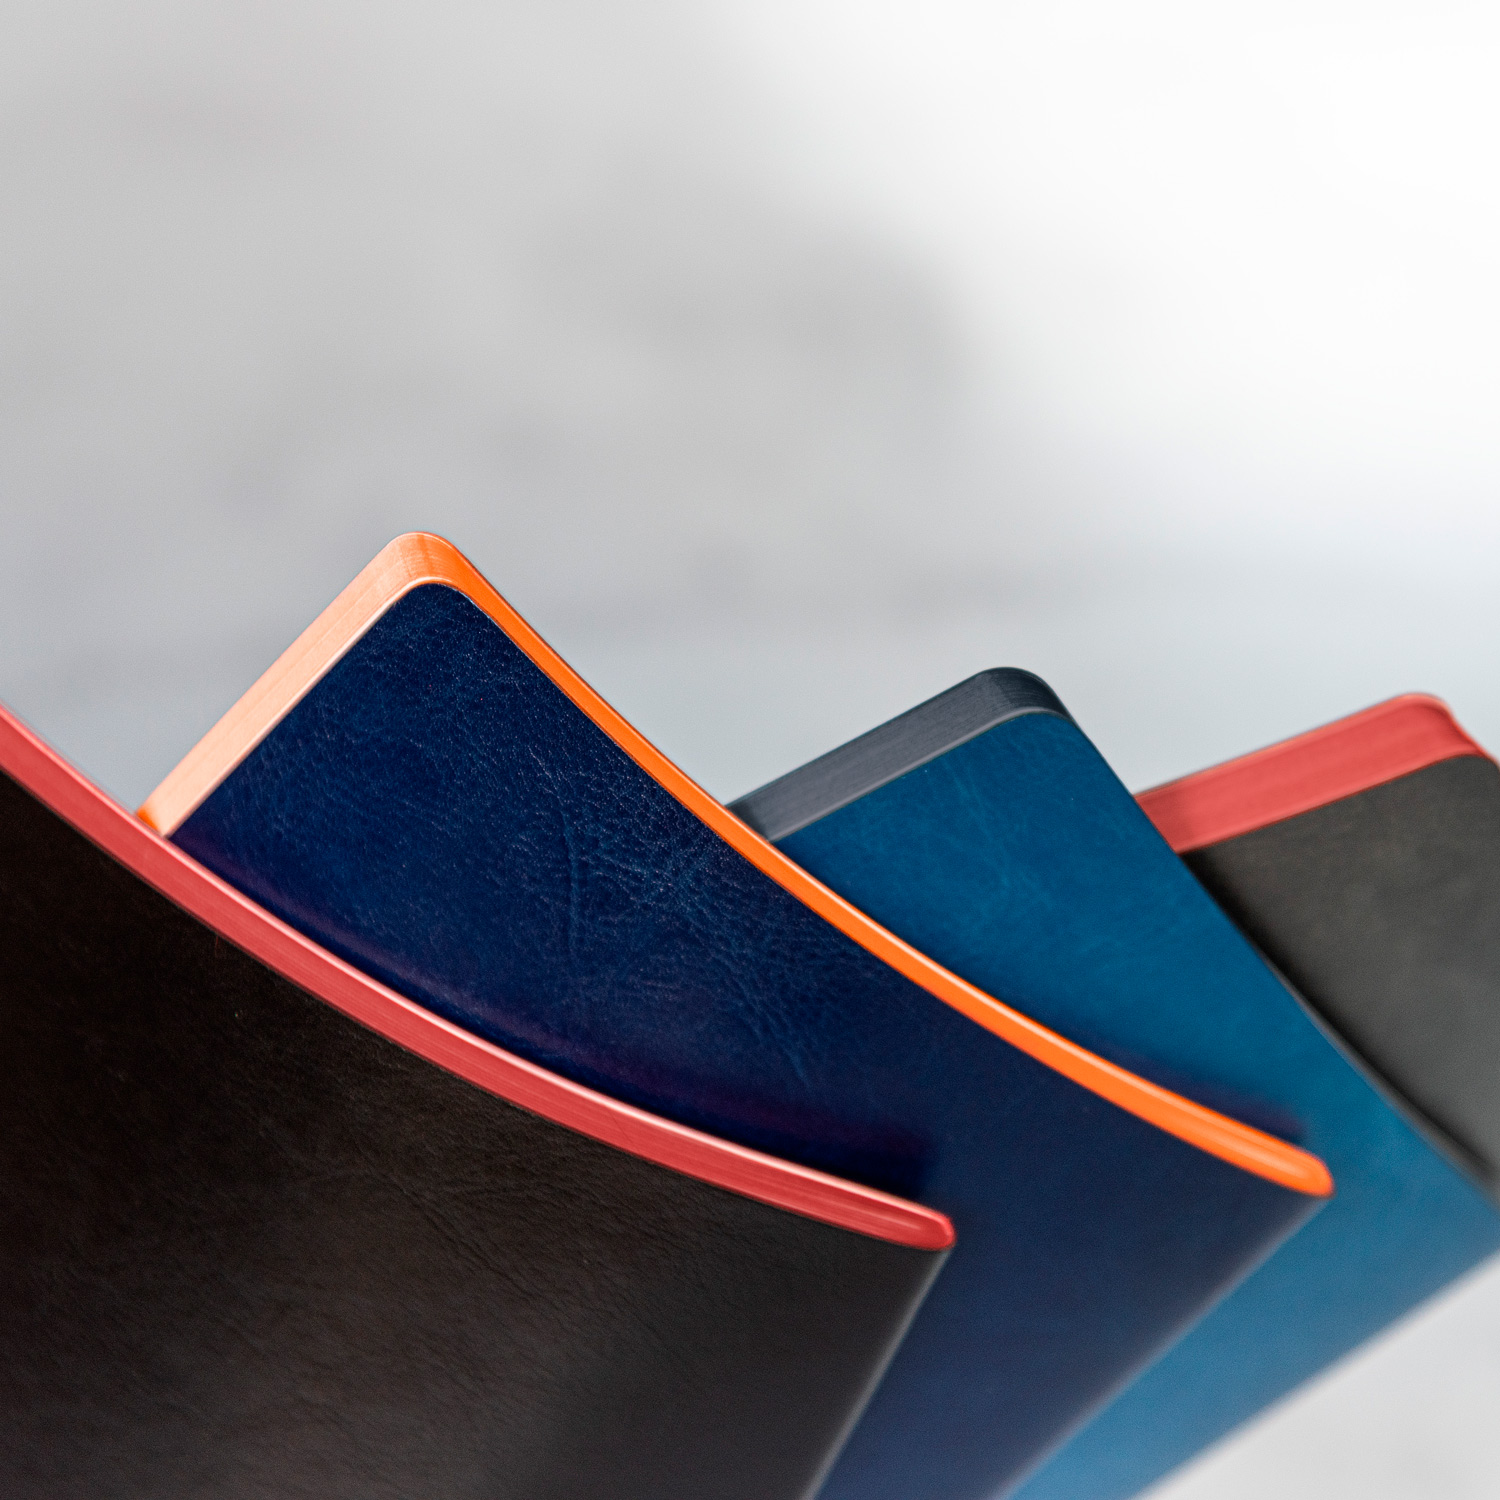 Блокнот Portobello Notebook Trend, River side slim, черный/красный